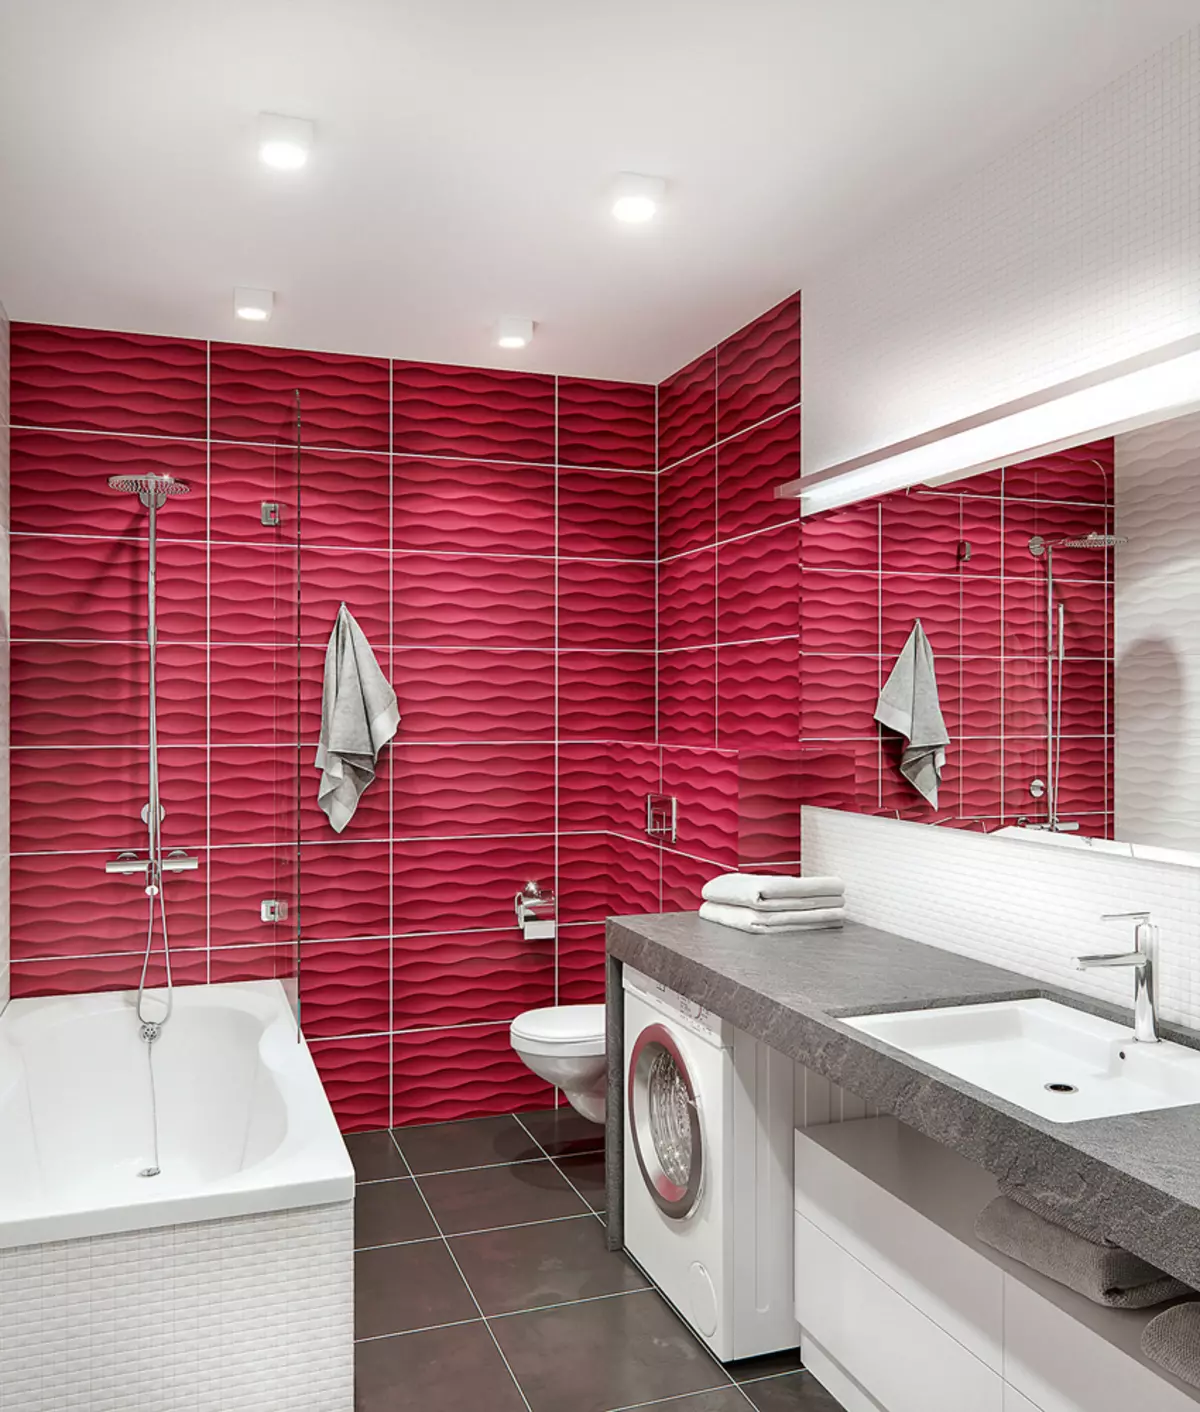 12 projets de design de salle de bain